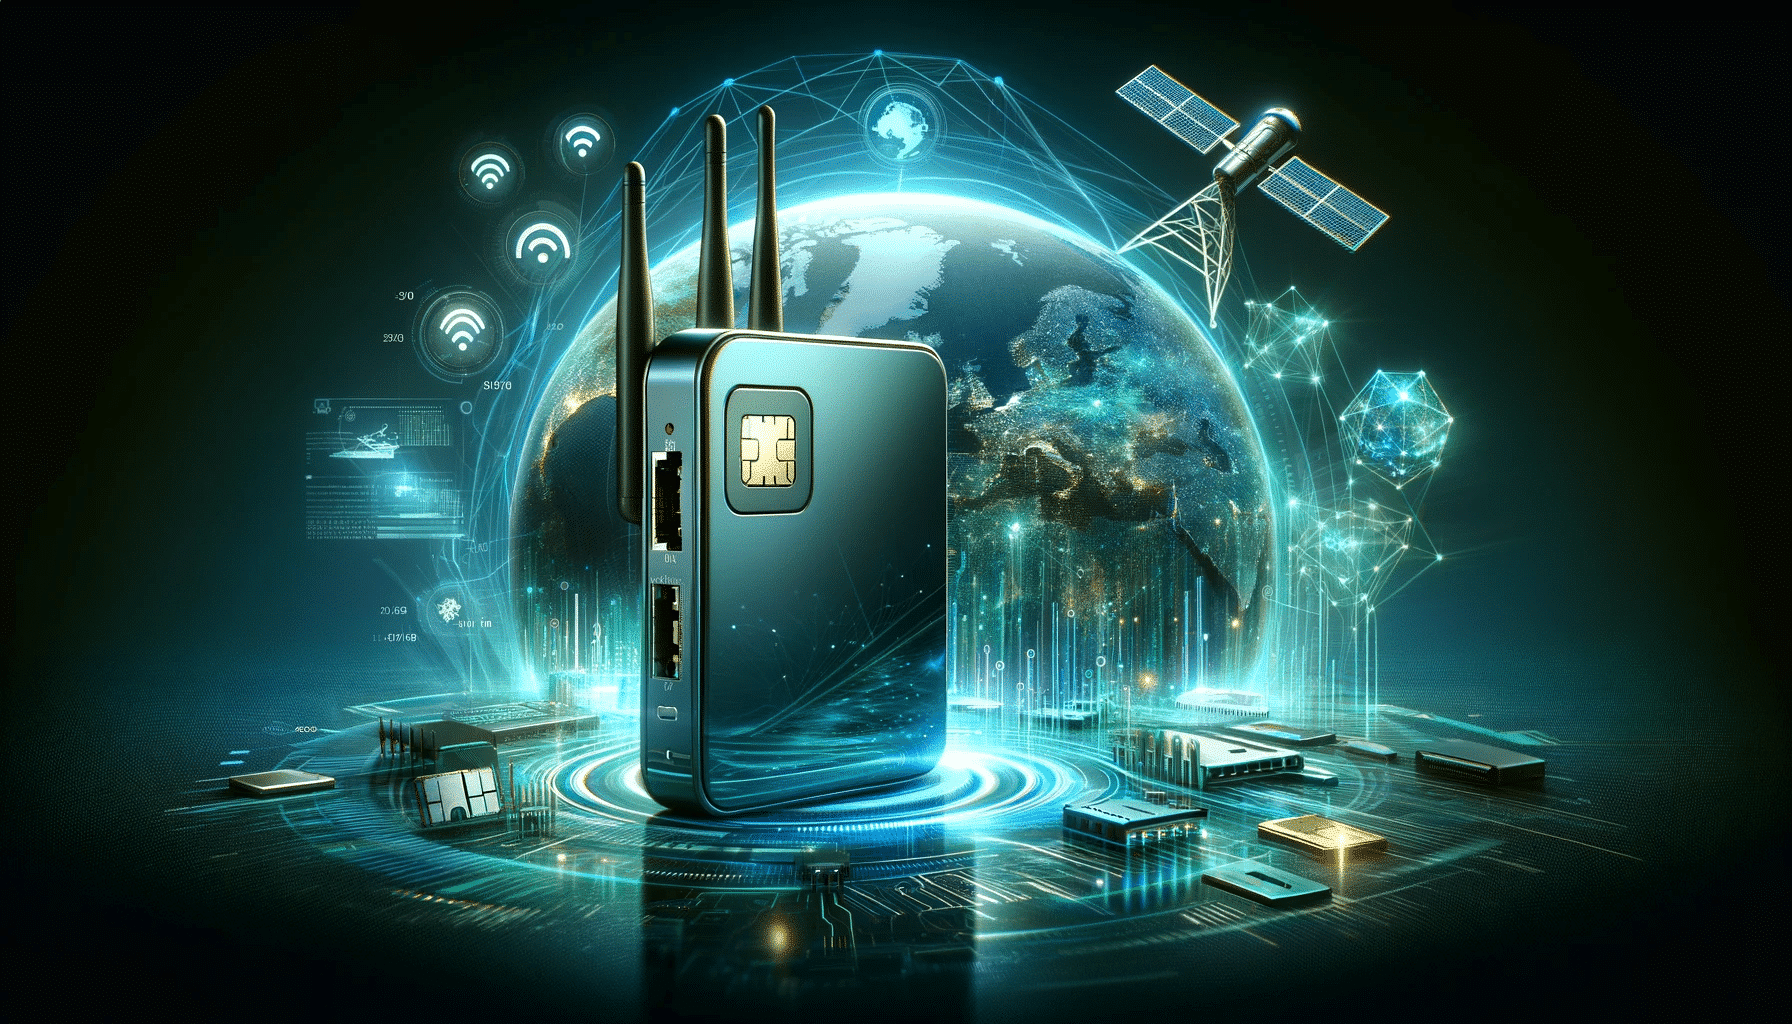 Современный дизайн мобильного маршрутизатора со слотом для SIM-карты, окруженного значками сетевых подключений, цифровыми потоками данных и спутниковыми изображениями, представляющими интеграцию технологии Starlink, на футуристическом цифровом фоне в холодных синих и зеленых тонах, символизирующих передовые технологии мобильного интернета.